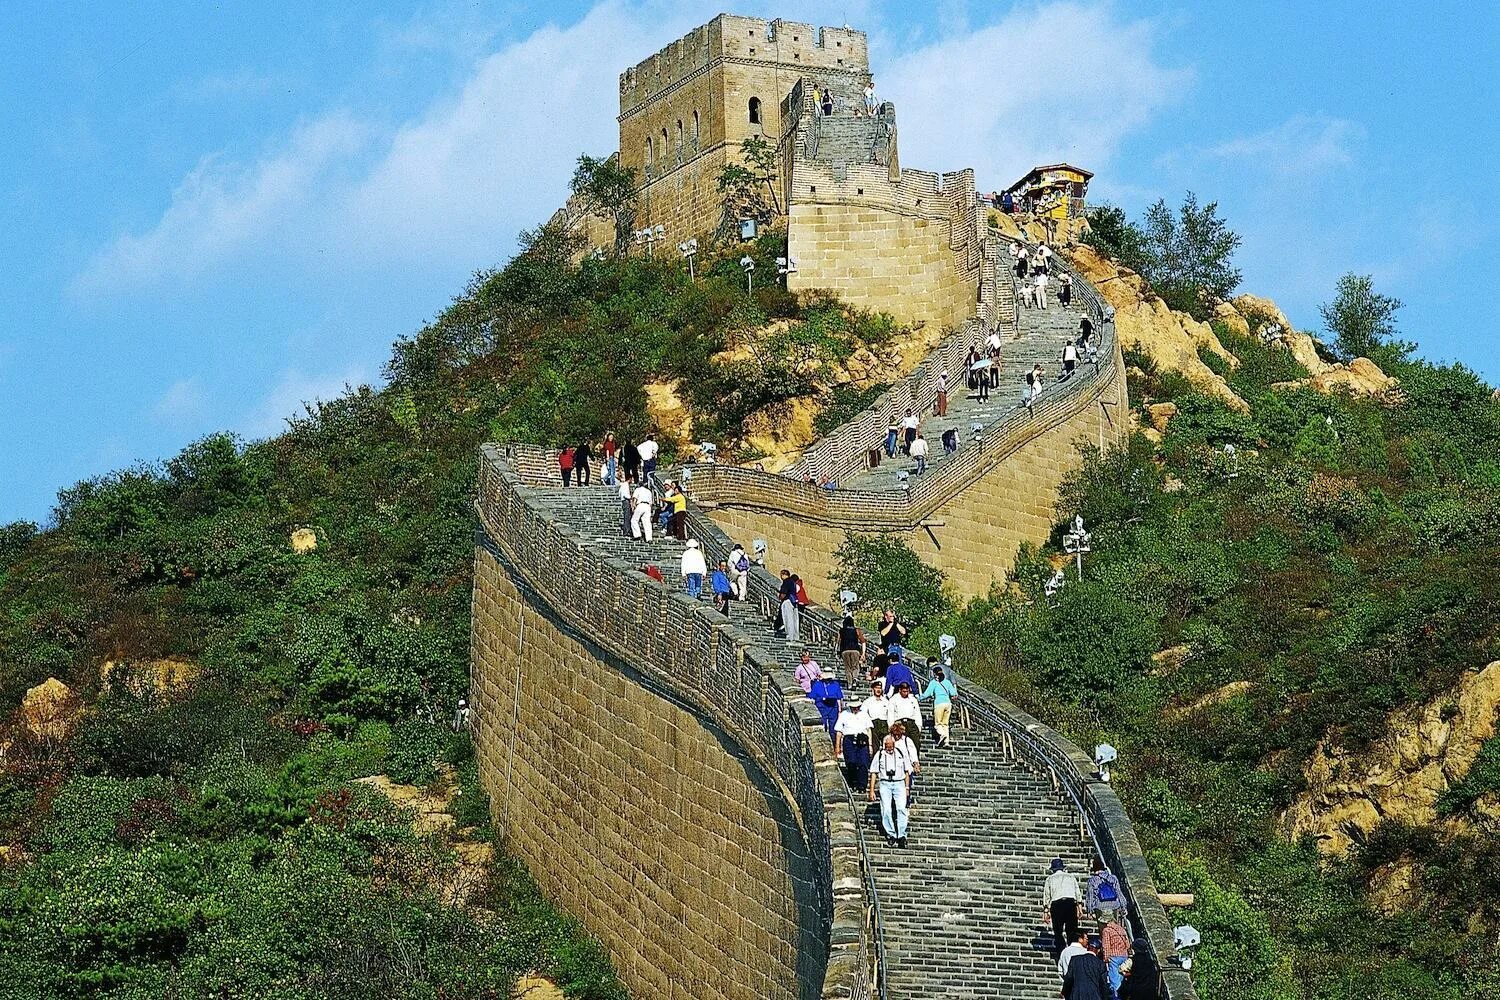 Части великой китайской стены. Китай Пекин Великая китайская стена. Пекин Великая стена. Великая китайская стена экскурсия. Великая китайская стена туристы.